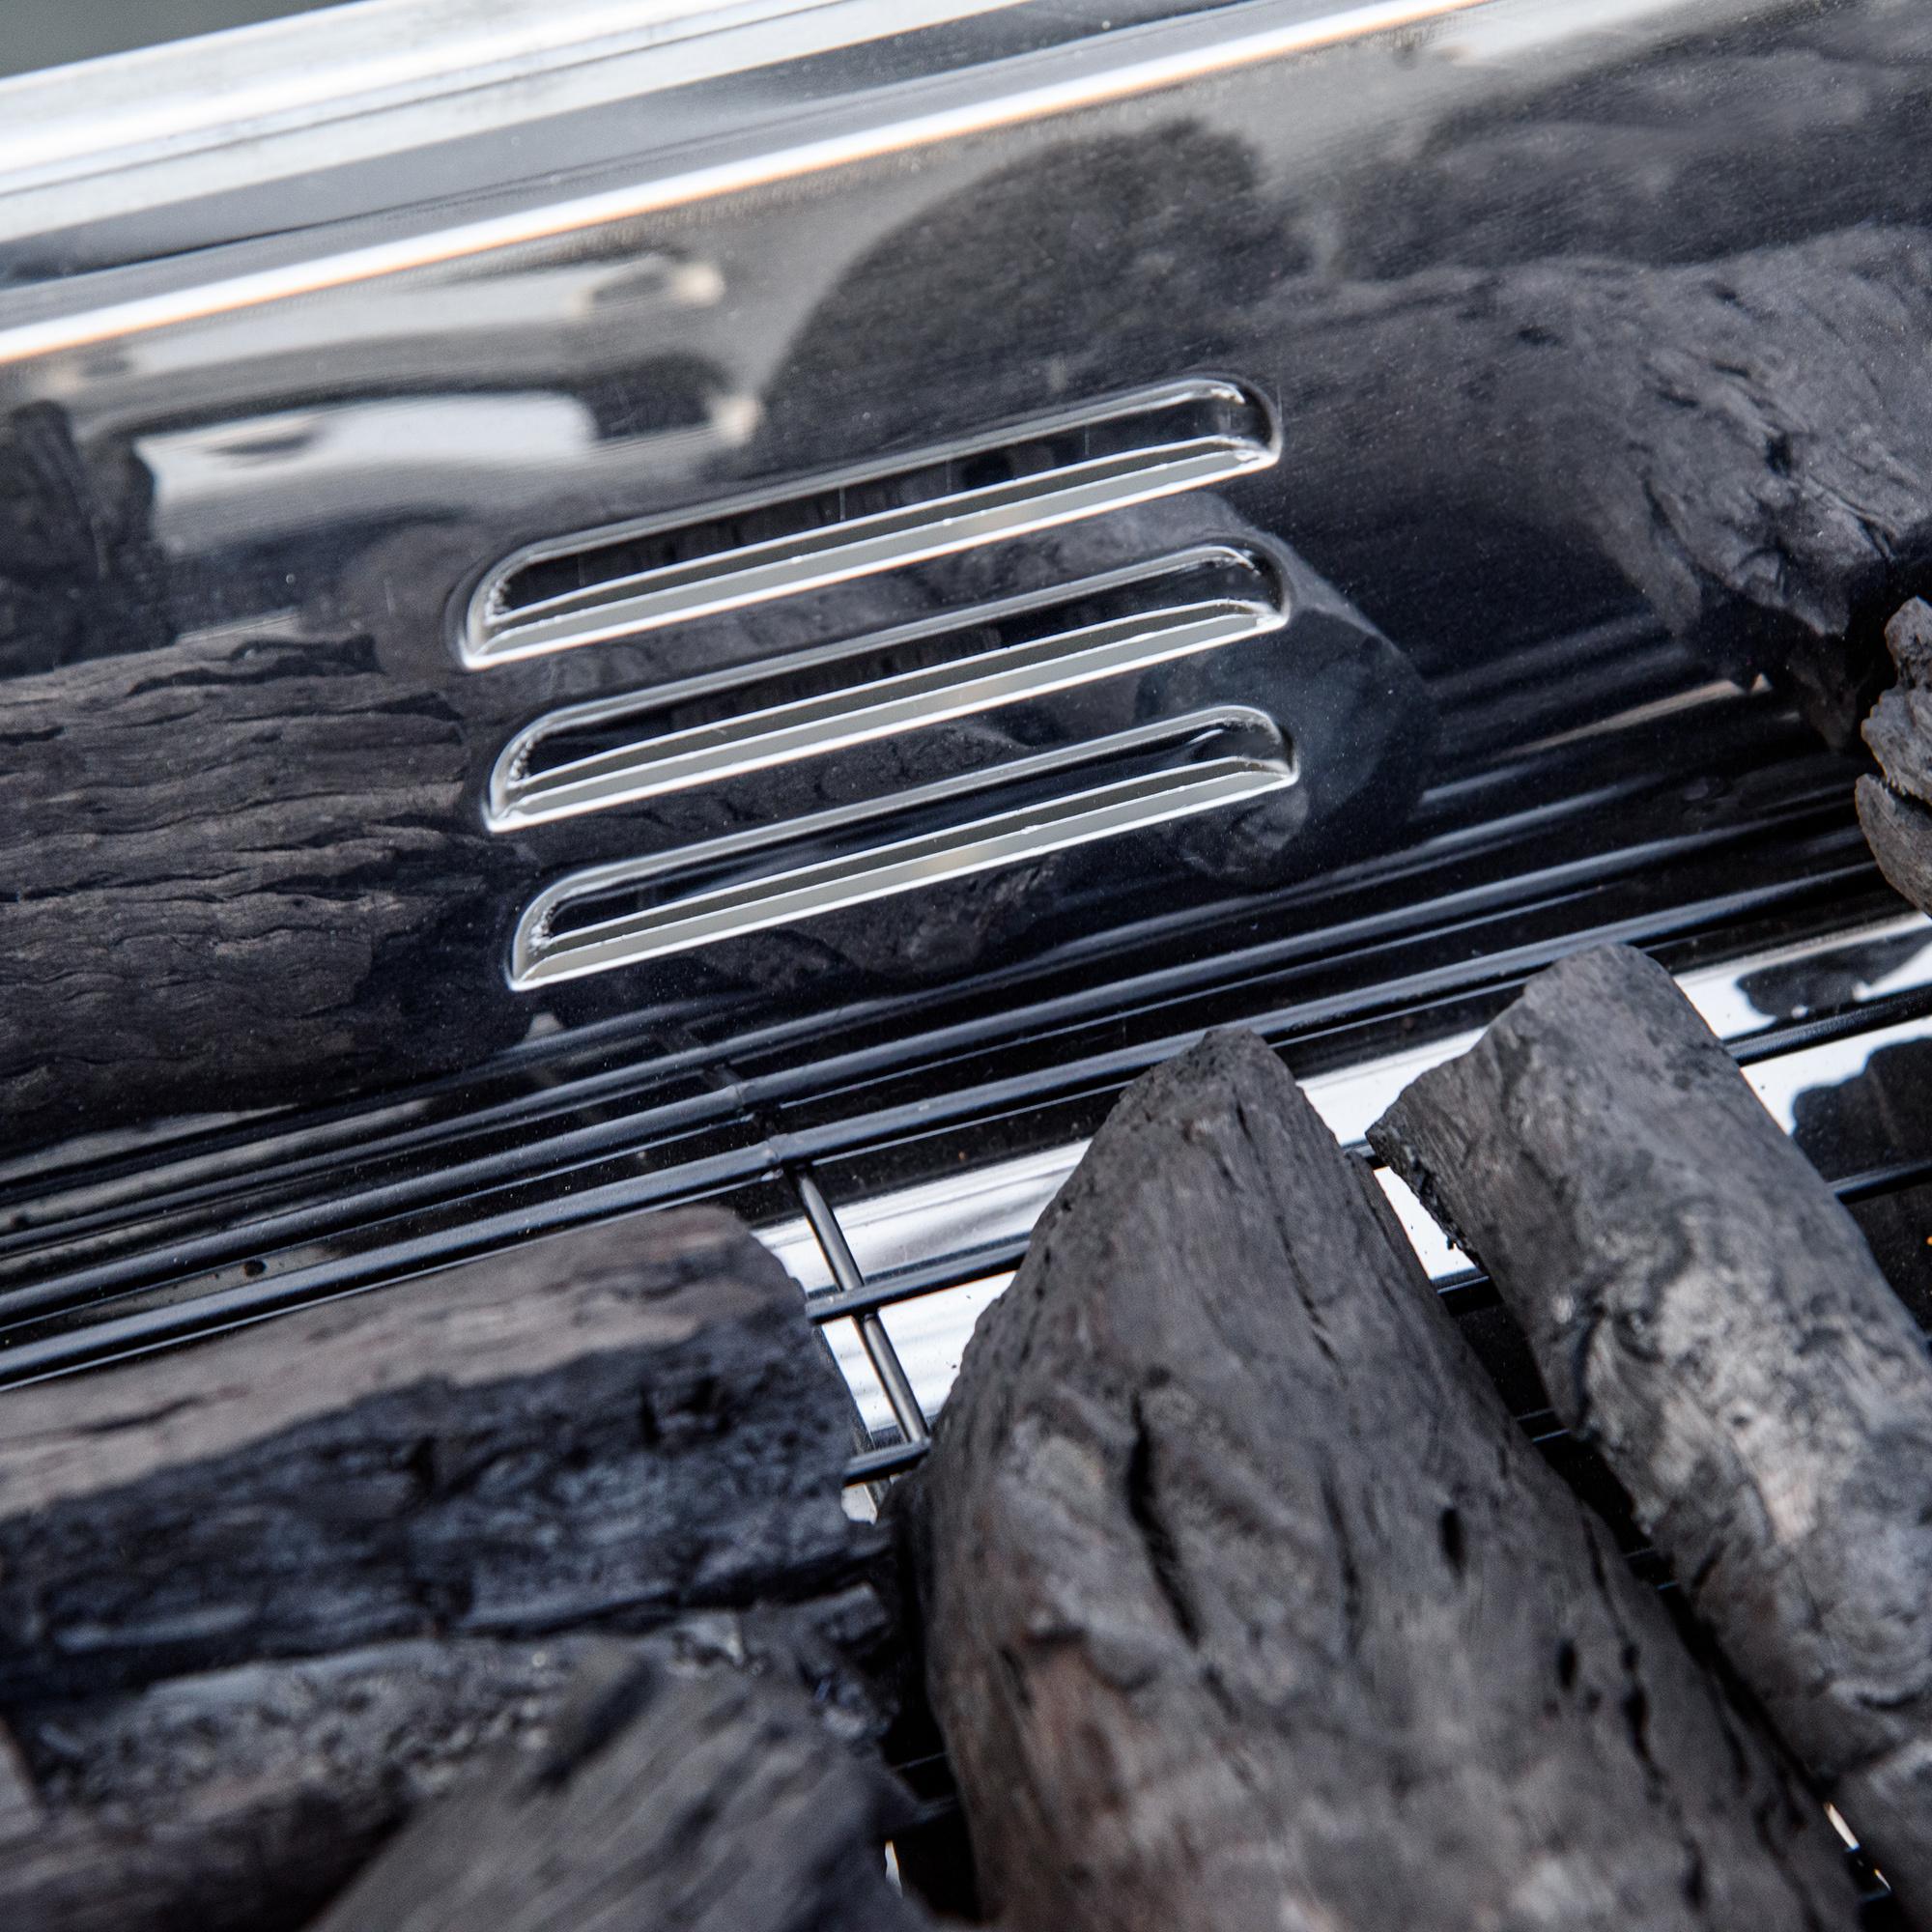 Barbecue à charbon portable BBQ grill sur pieds 2 tablettes rabattables dim. 93L x 30l x 60H cm acier inox.